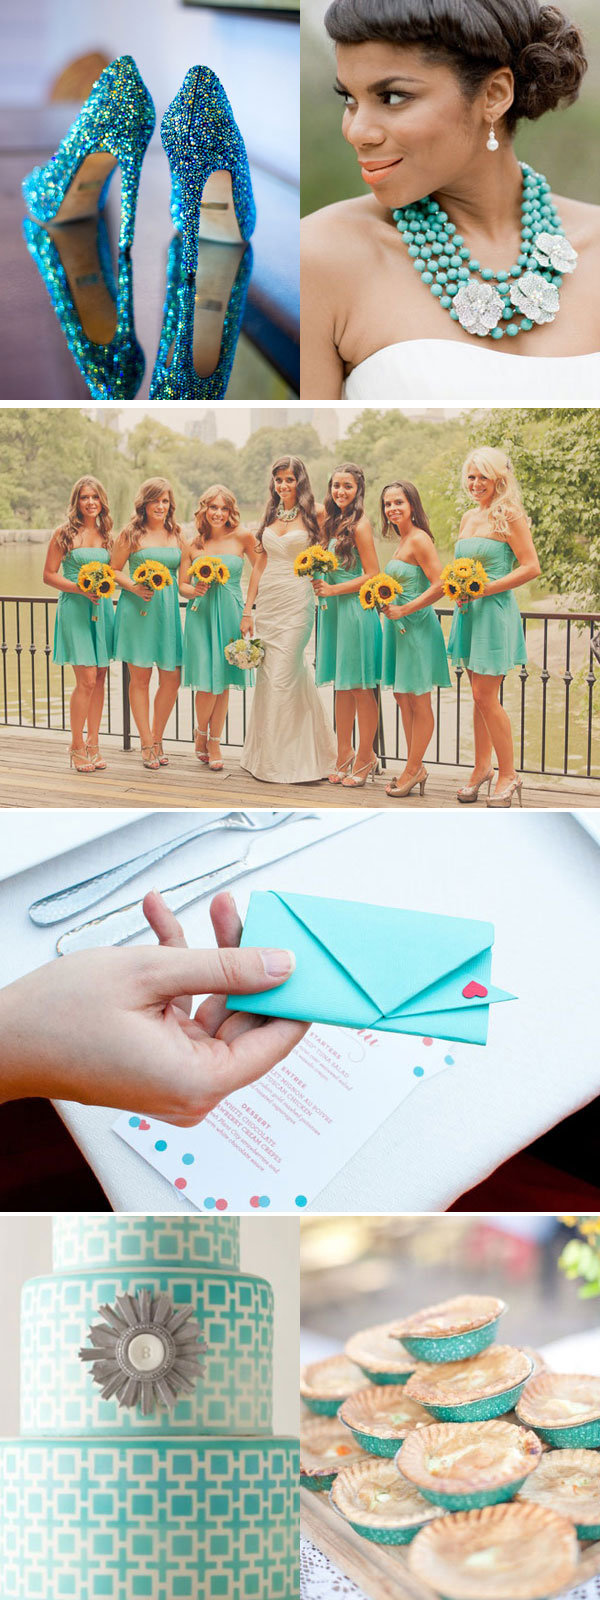 blue wedding ideas